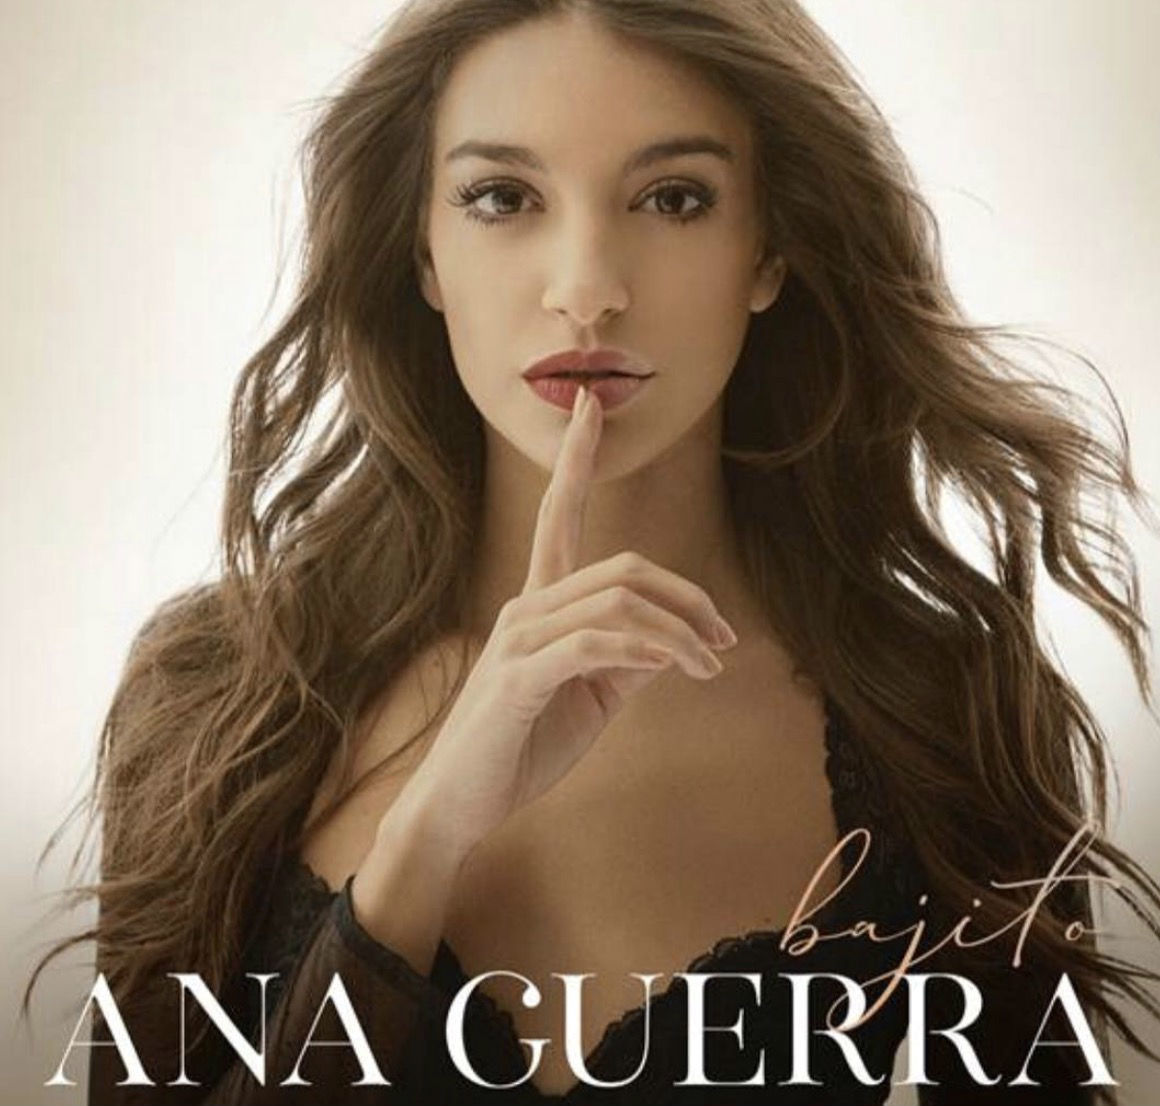 Portada de Bajito, el segundo single de Ana Guerra tras Ni la Hora